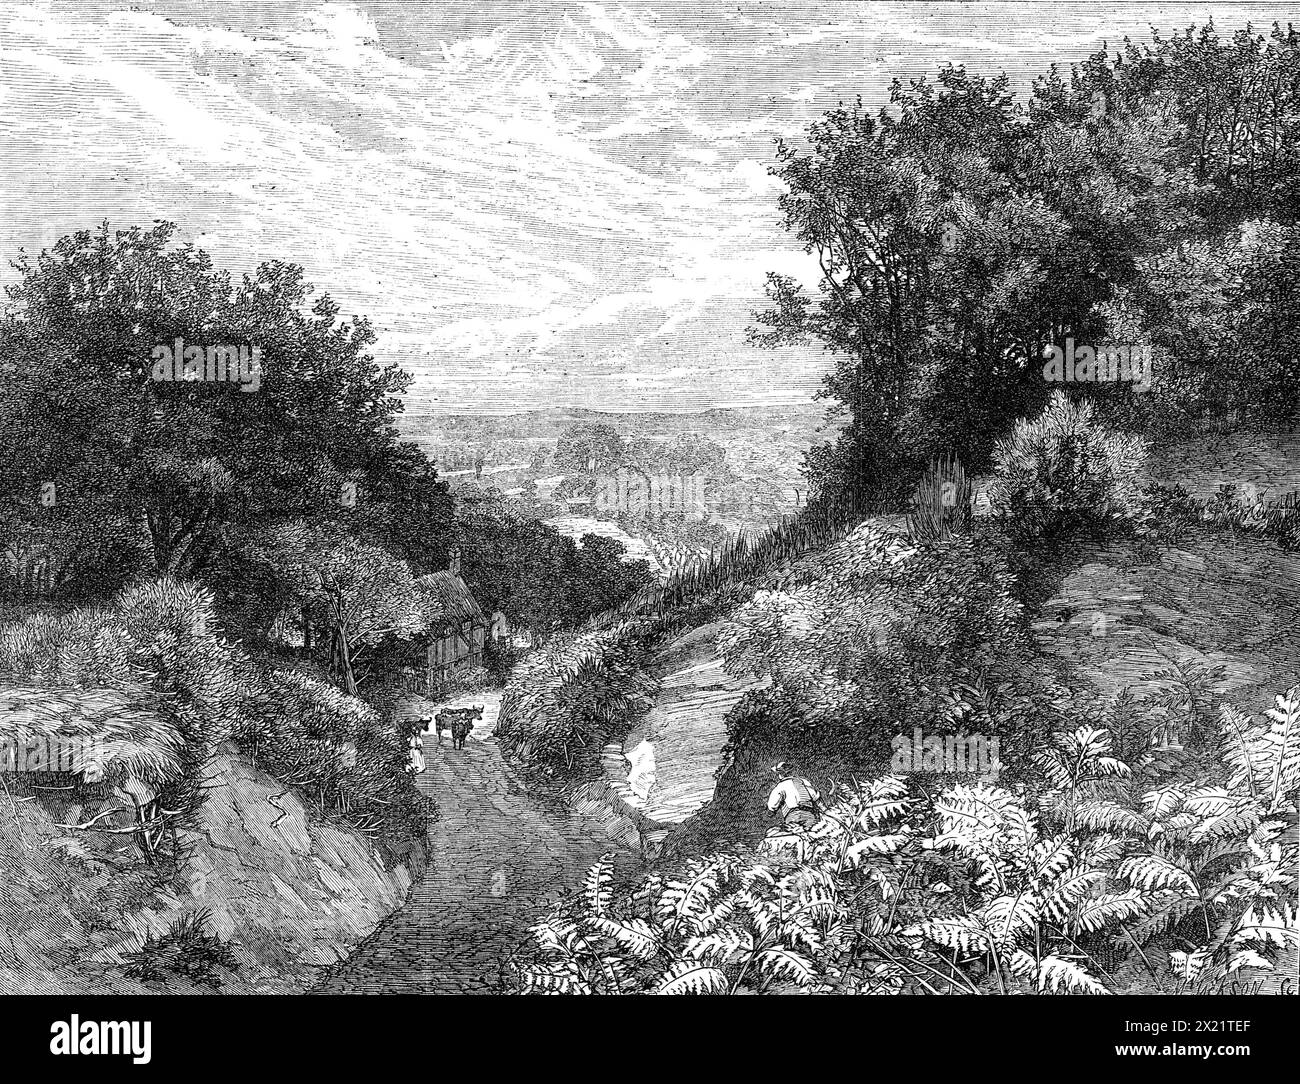 The Turner Gold Medal Prize Landscape, di F. Walton, 1864. Incisione di un dipinto. "La scena... è una di quelle tra le colline del Surrey così ben note ai paesaggisti della metropoli. La vista è presa da una delle cavità sul lato di Leith Hill, guardando verso Aldershott, Guildford è appena distinguibile in lontananza, e all'orizzonte è leggermente tracciabile il particolare contorno della collina e punto di riferimento noto come la schiena di Hog. La strada che scendendo dalla declività della collina dall'immediato primo piano è profondamente tagliata nella Marna del quartiere, le calde sfumature, ducie, dorate Foto Stock